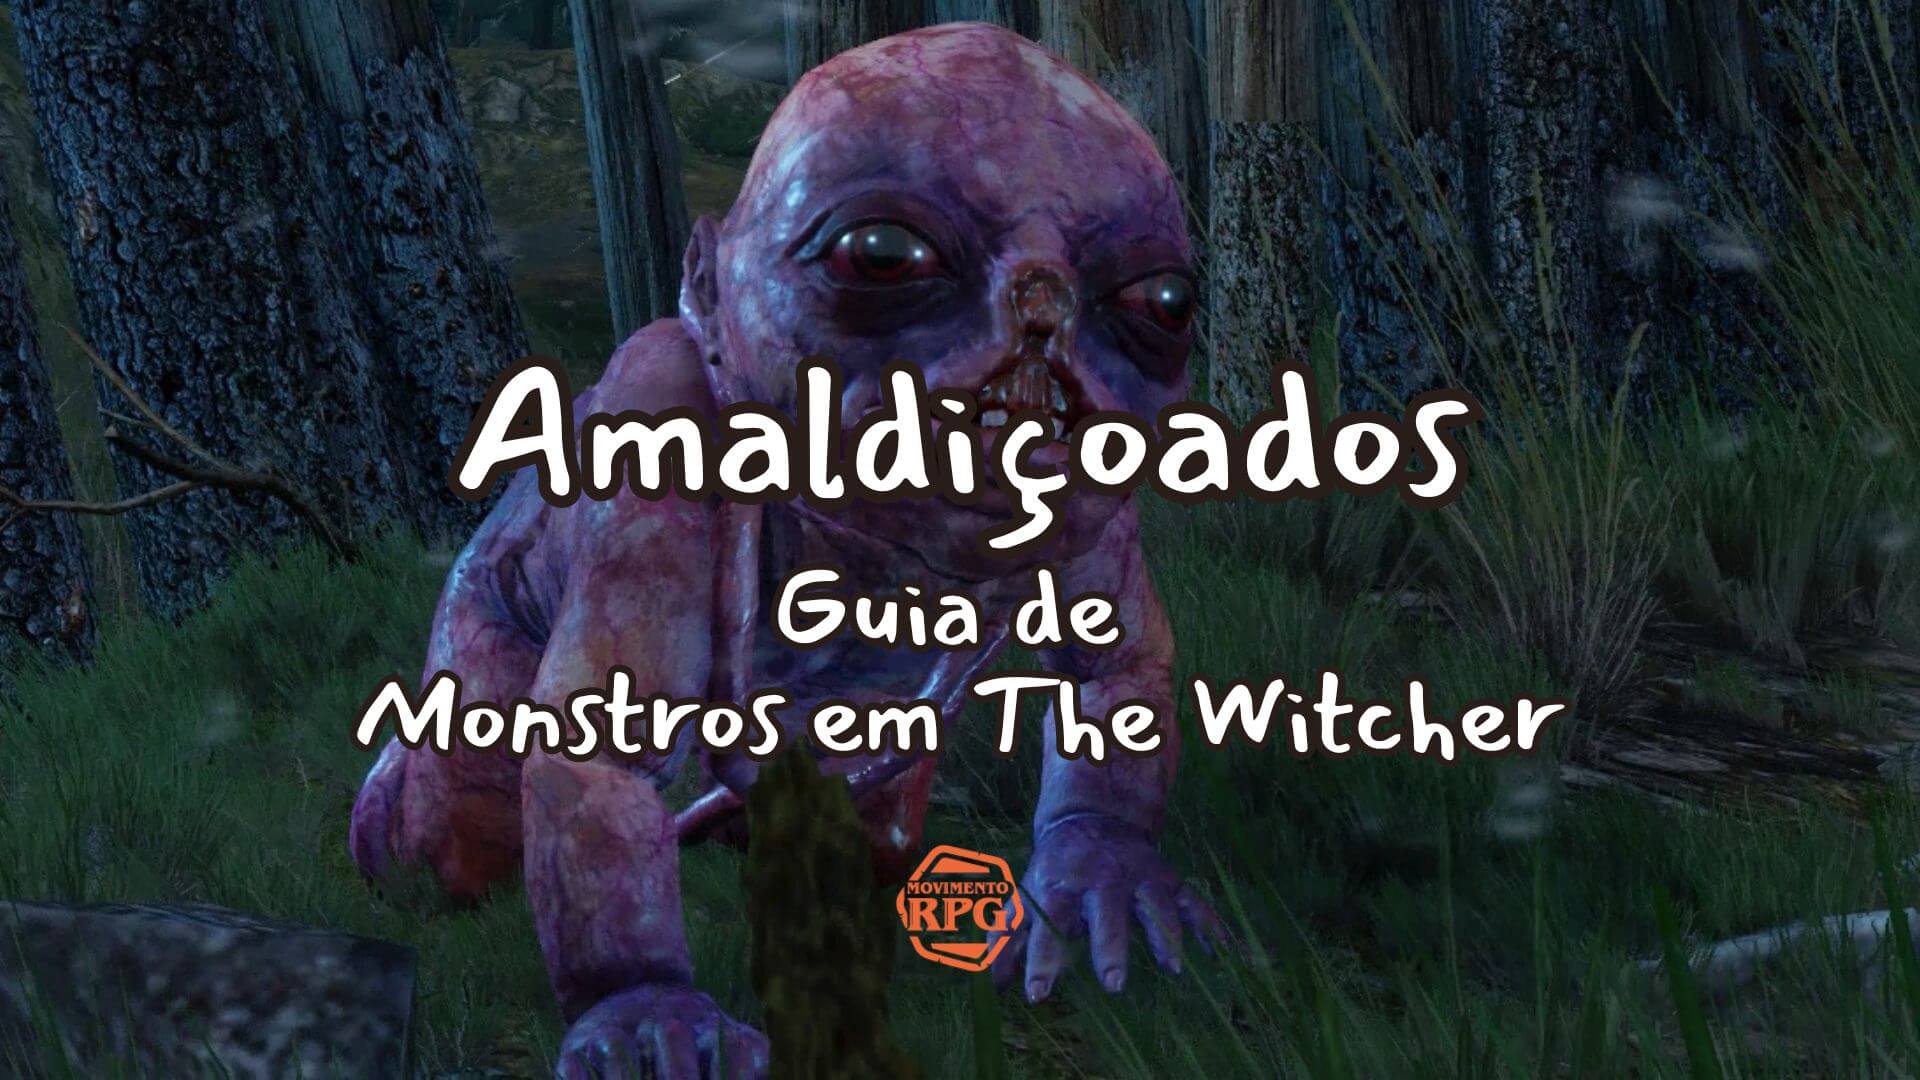 Amaldiçoados – Guia de Monstros em The Witcher